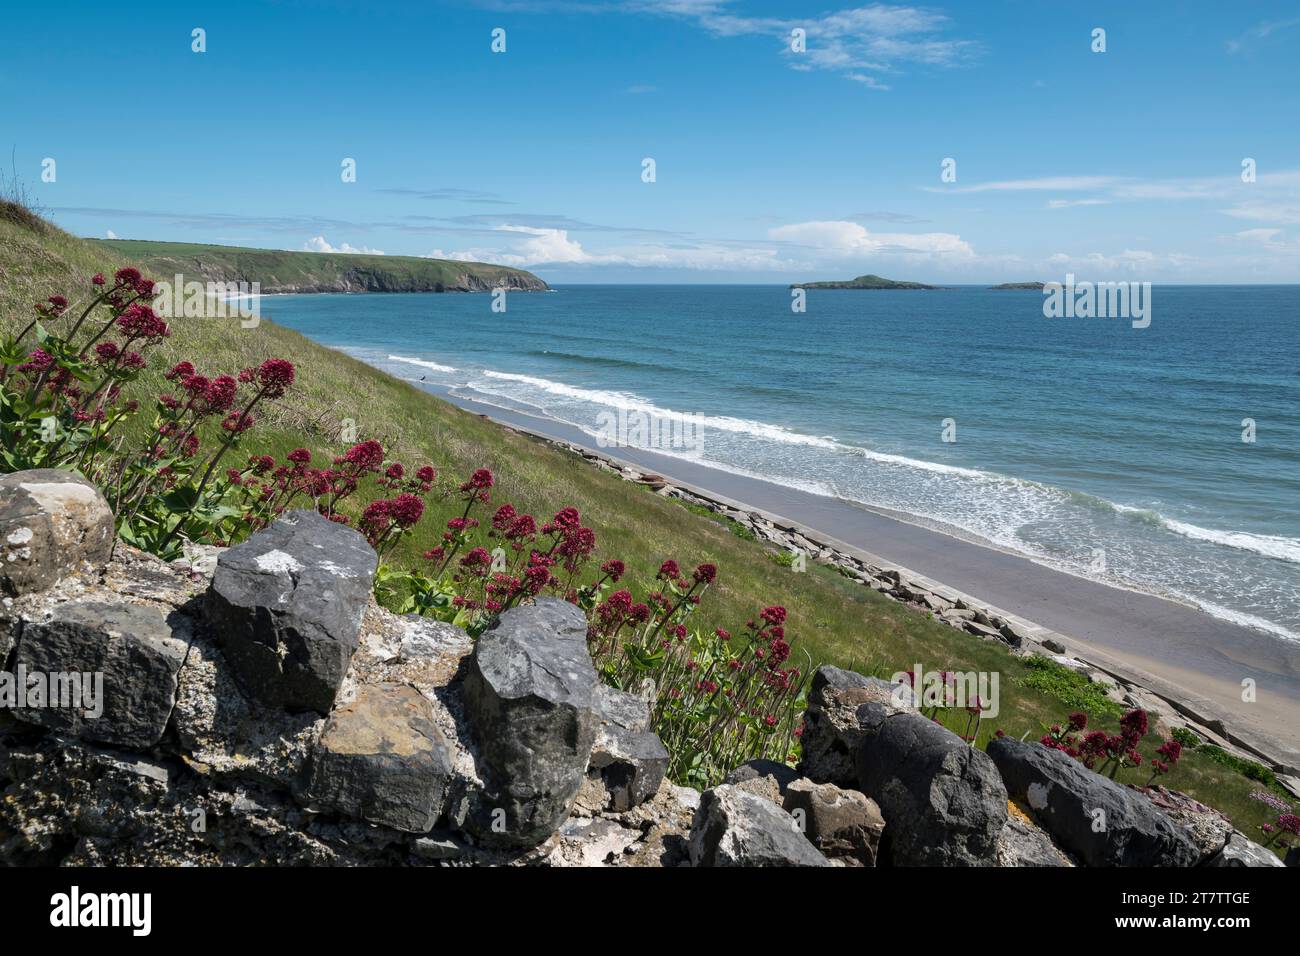 La playa de Aberdaron en Gwynedd en la península de LLeyn Gales del Norte con las islas Ynys Gwylan Fawr y Ynys Gwylan Bach en la distancia Foto de stock